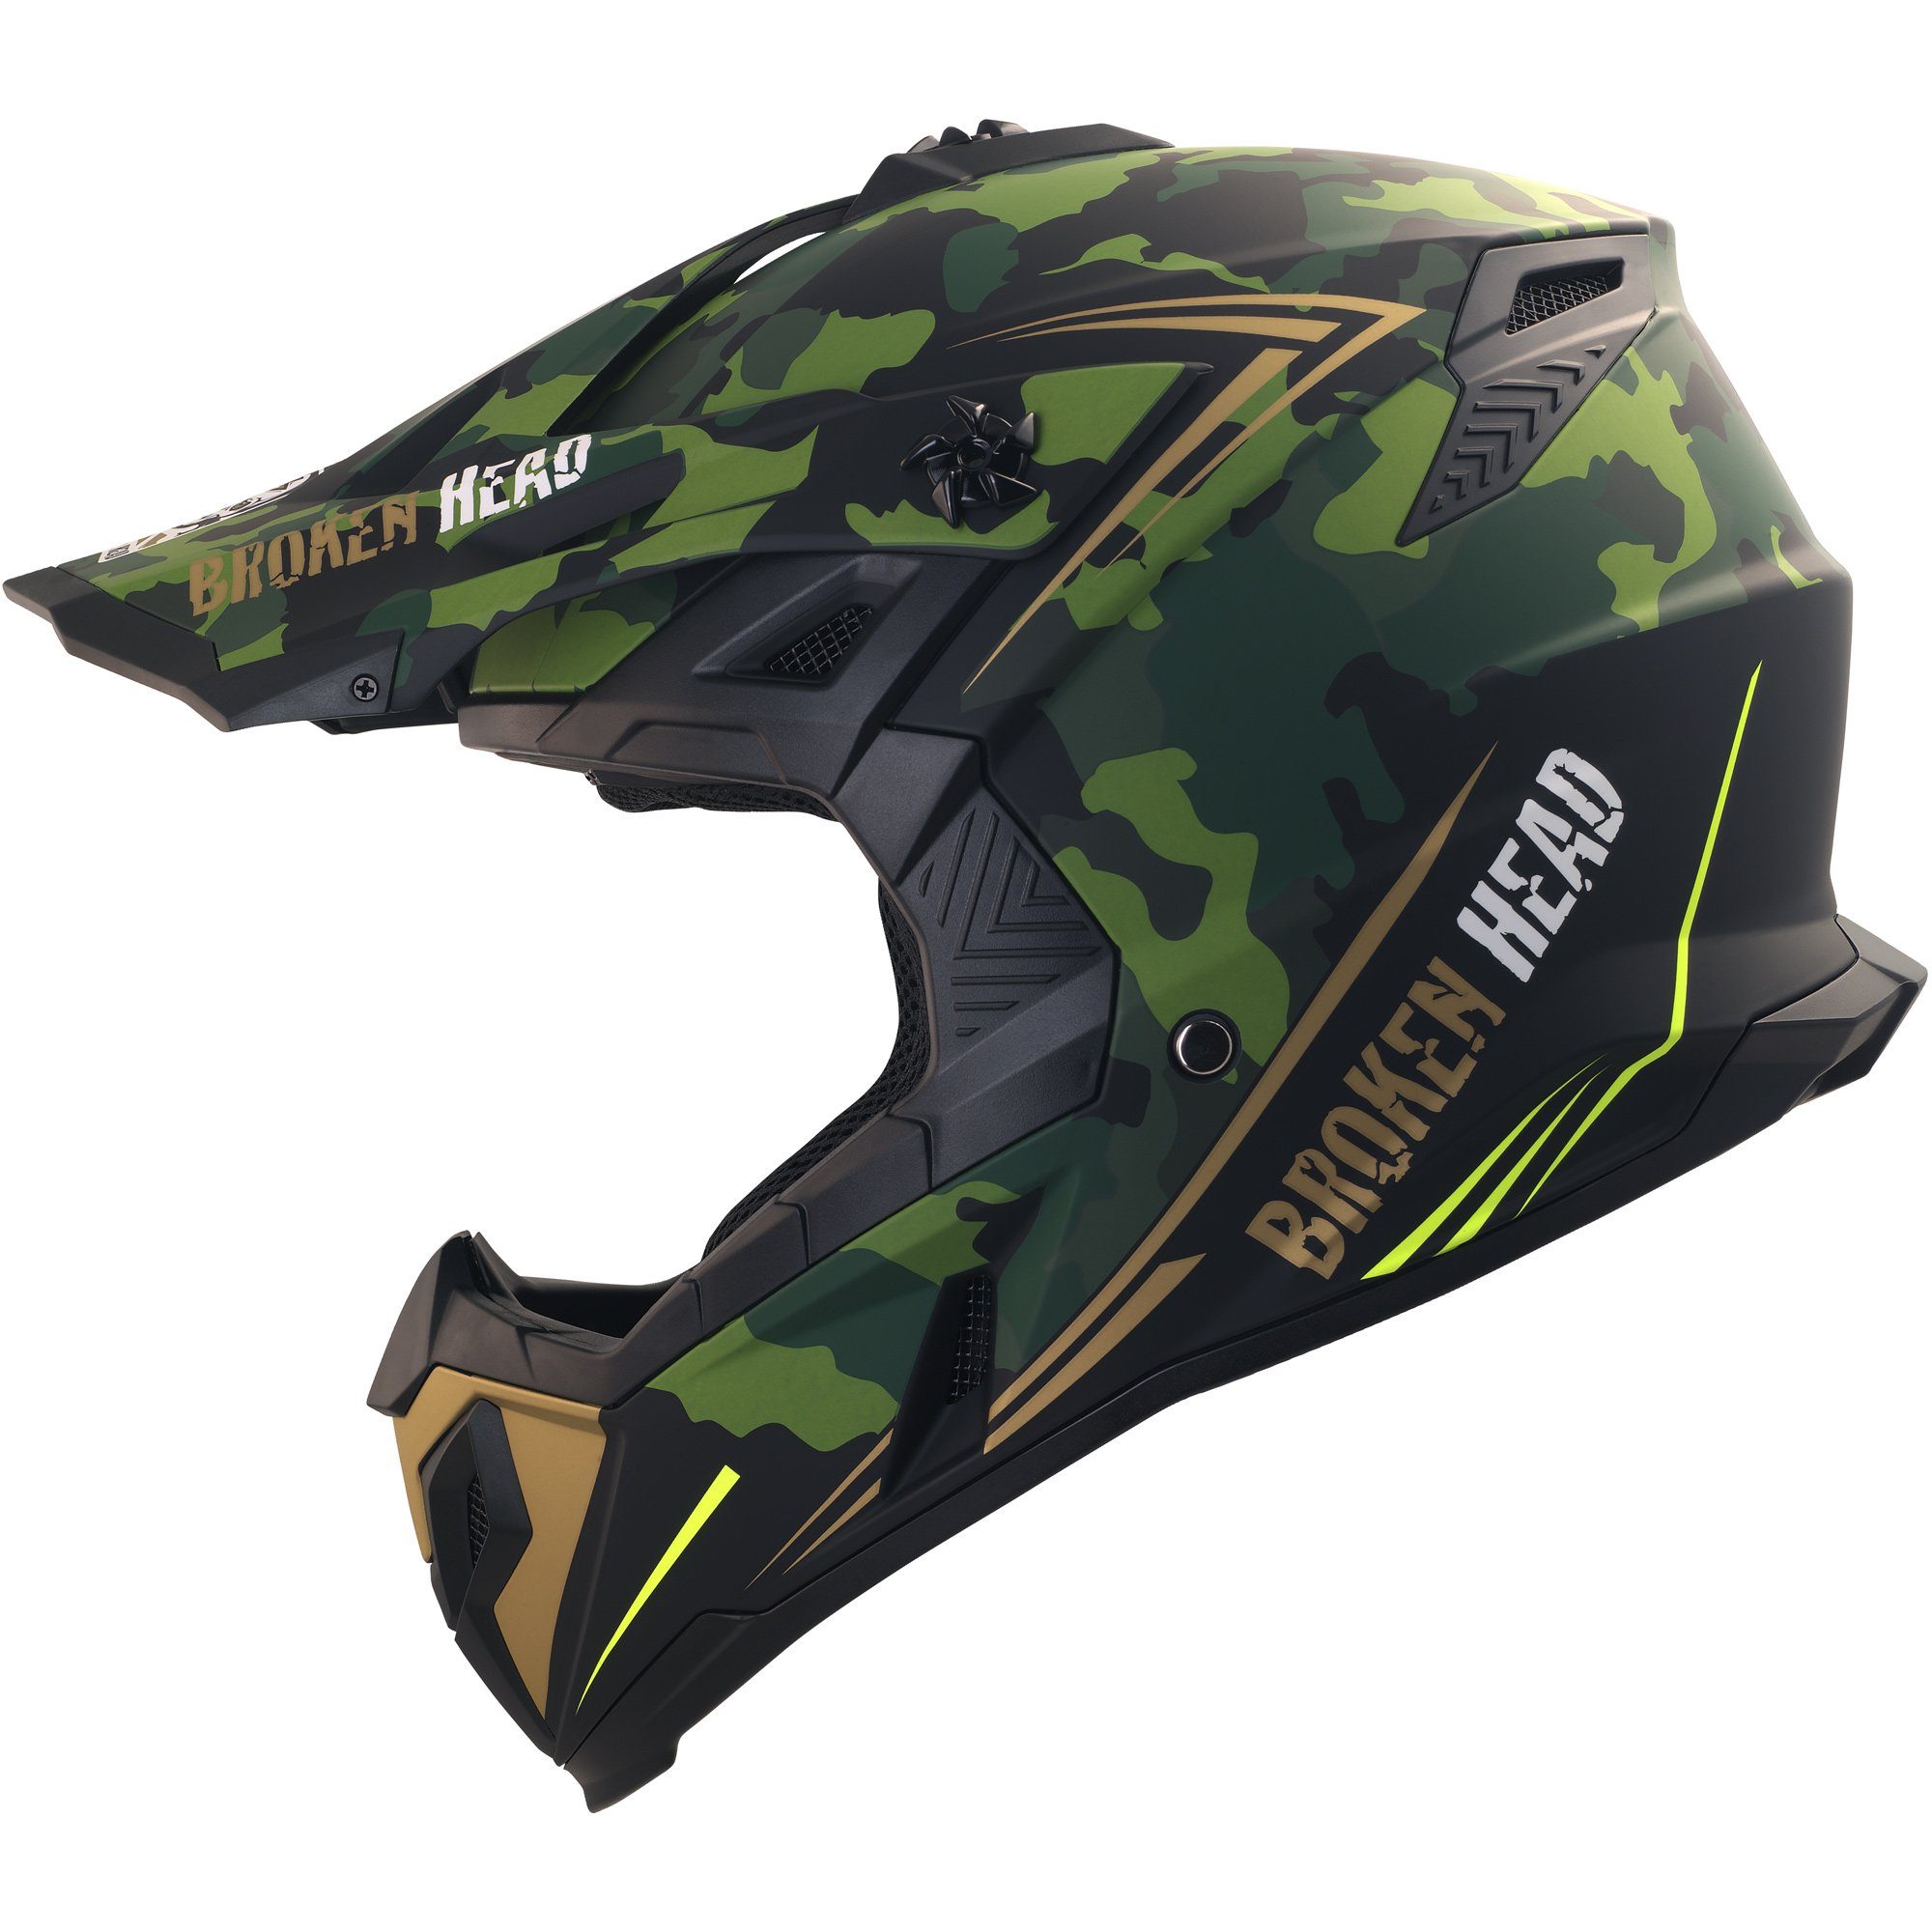 Broken Head Motocrosshelm »Squadron Rebelution Camouflage-Grün-Gold«, mit  Ratschen- und Doppel-D-Verschluss online kaufen | OTTO